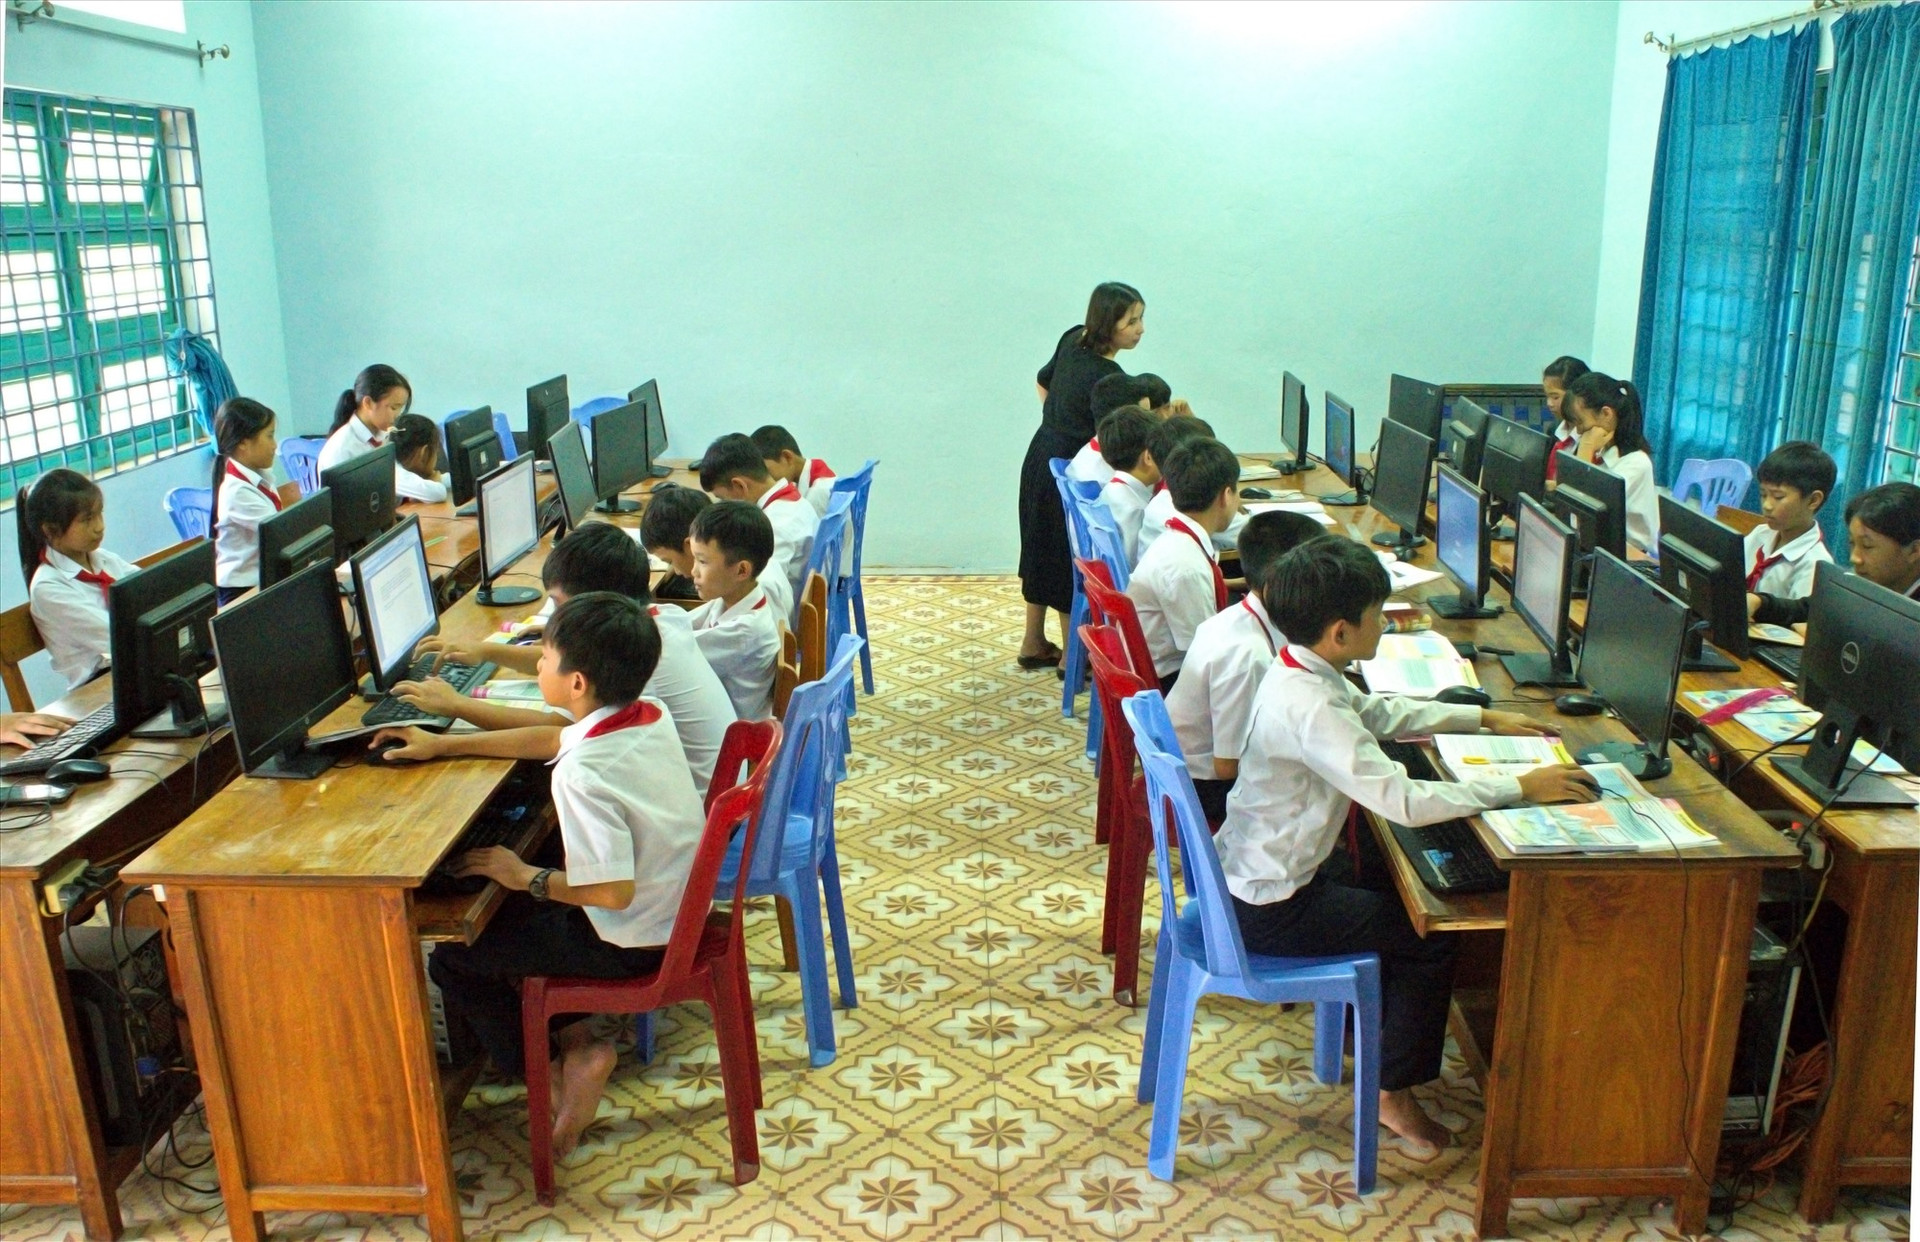 Trang thiết bị, đồ dùng dạy học của Trường THCS Phan Bá Phiến (xã Tam Tiến) được đầu tư đồng bộ, đáp ứng nhu cầu giảng dạy và học tập. Ảnh: NGUYỄN ĐIỆN NGỌC